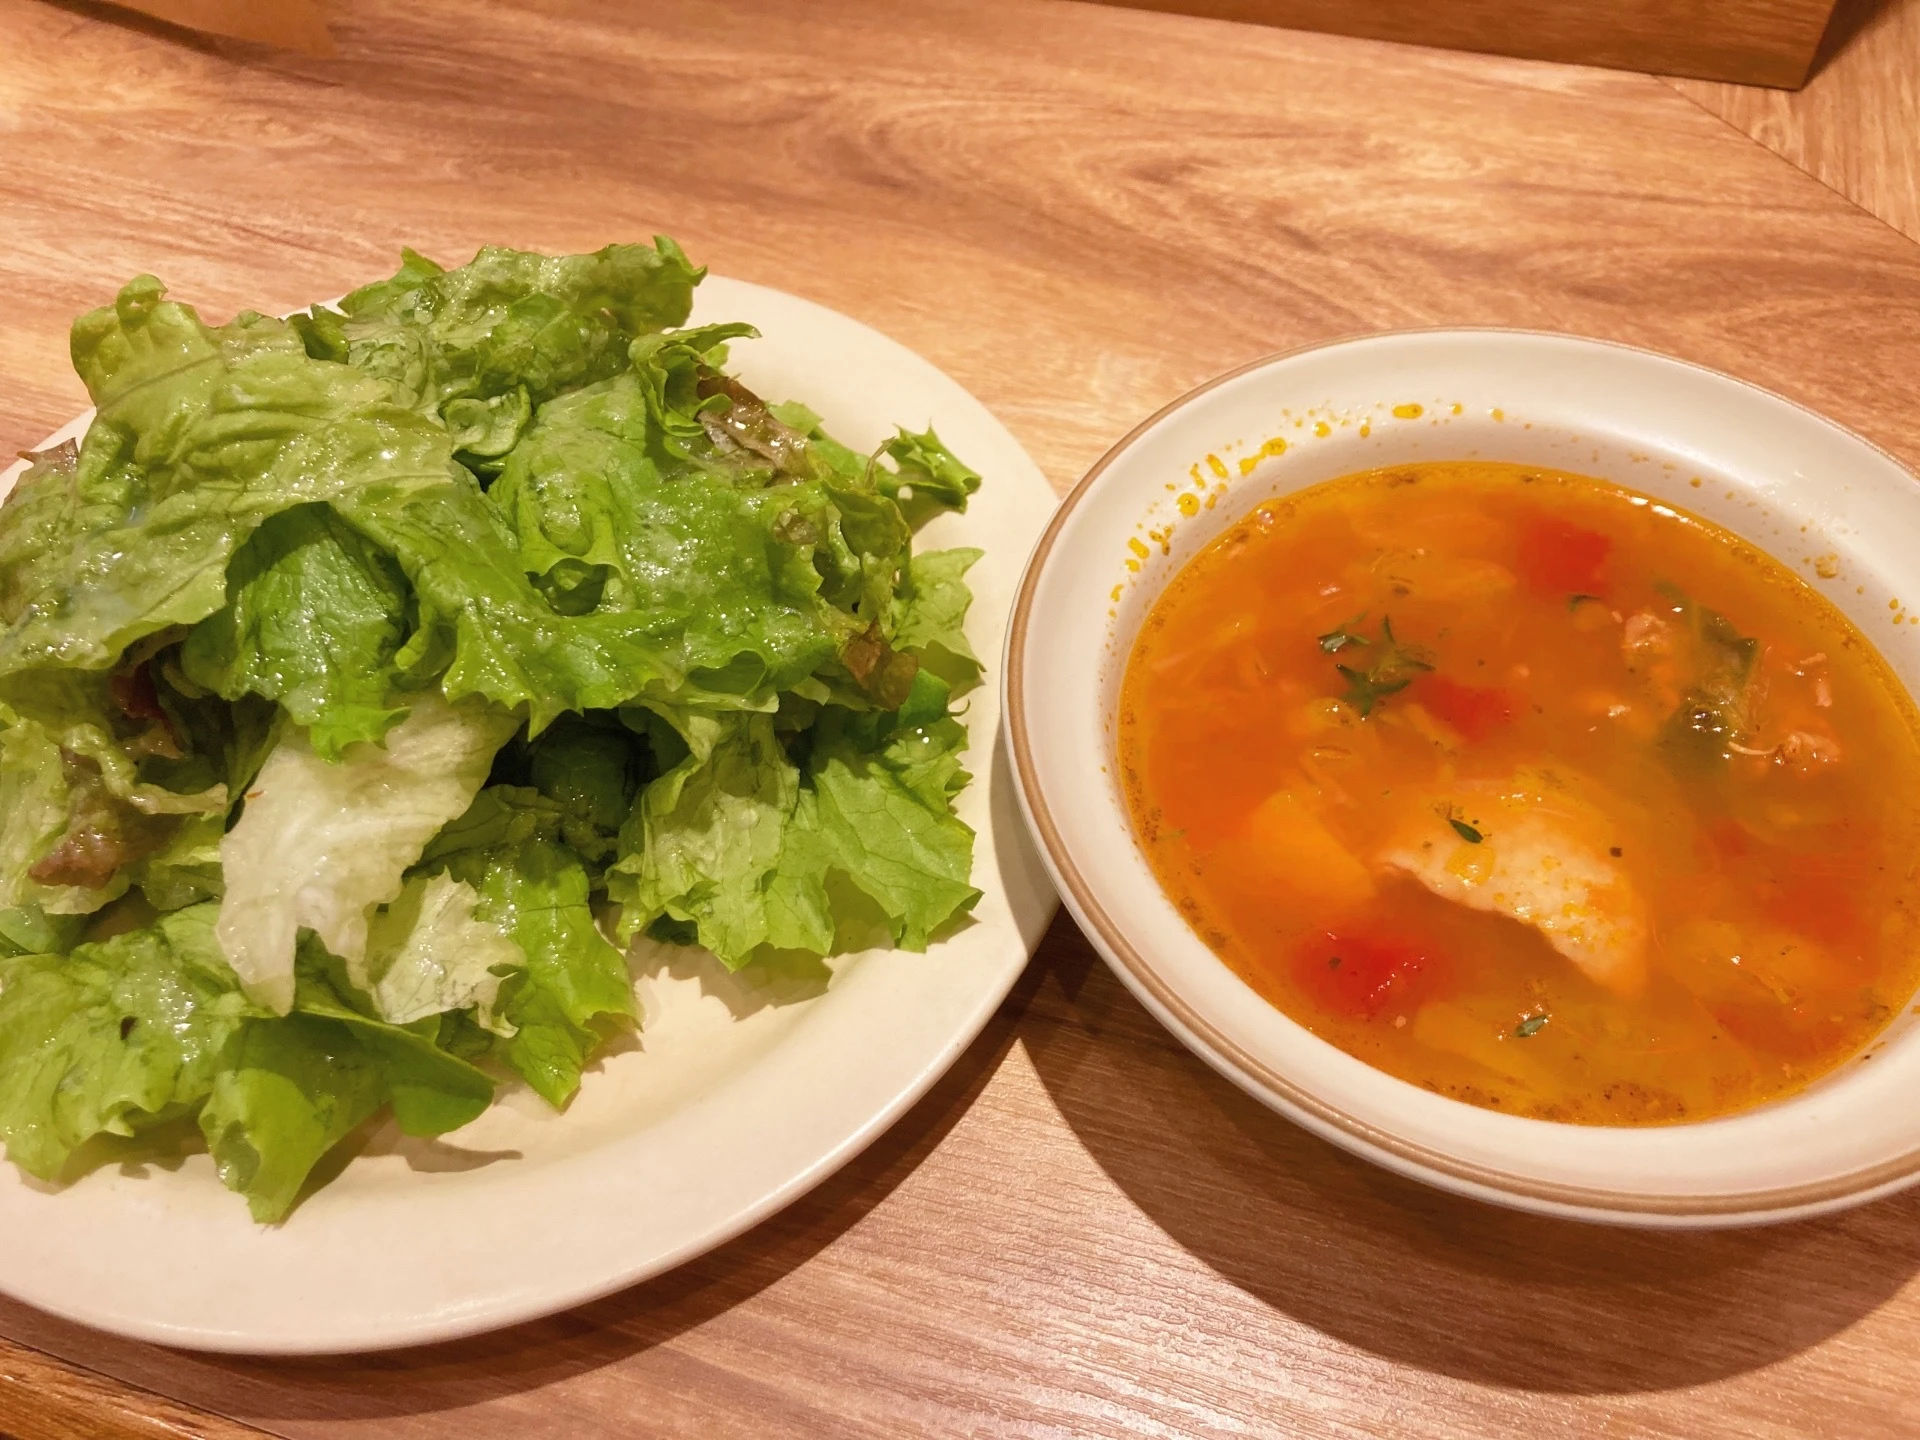 セットのサラダとスープ。葉野菜のサラダ、ハーブの効いたミネストローネ。